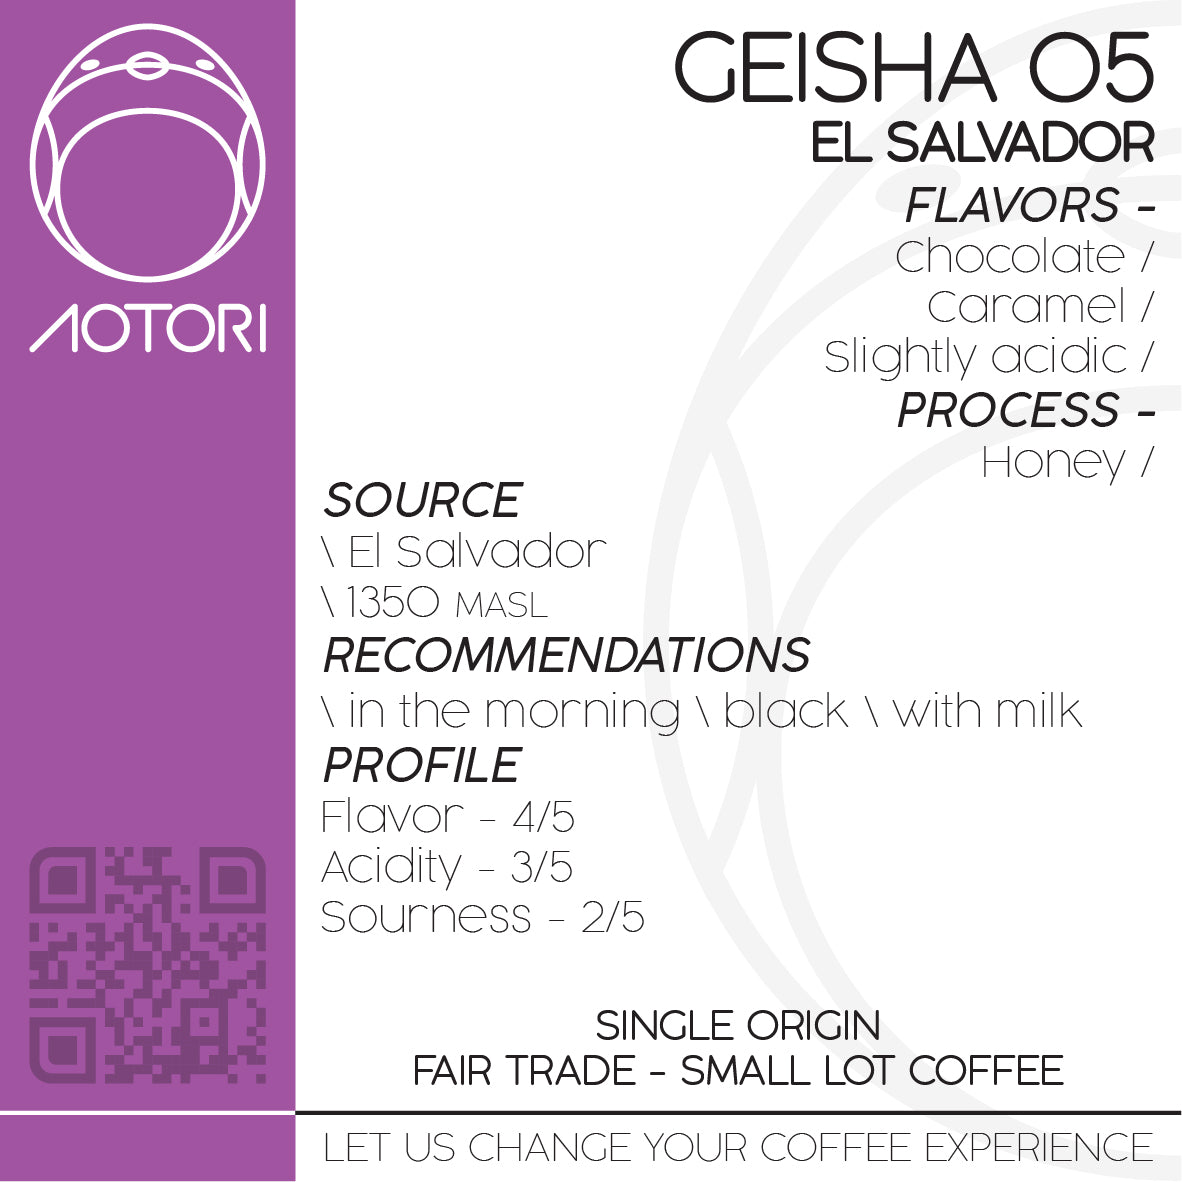 Geisha 05